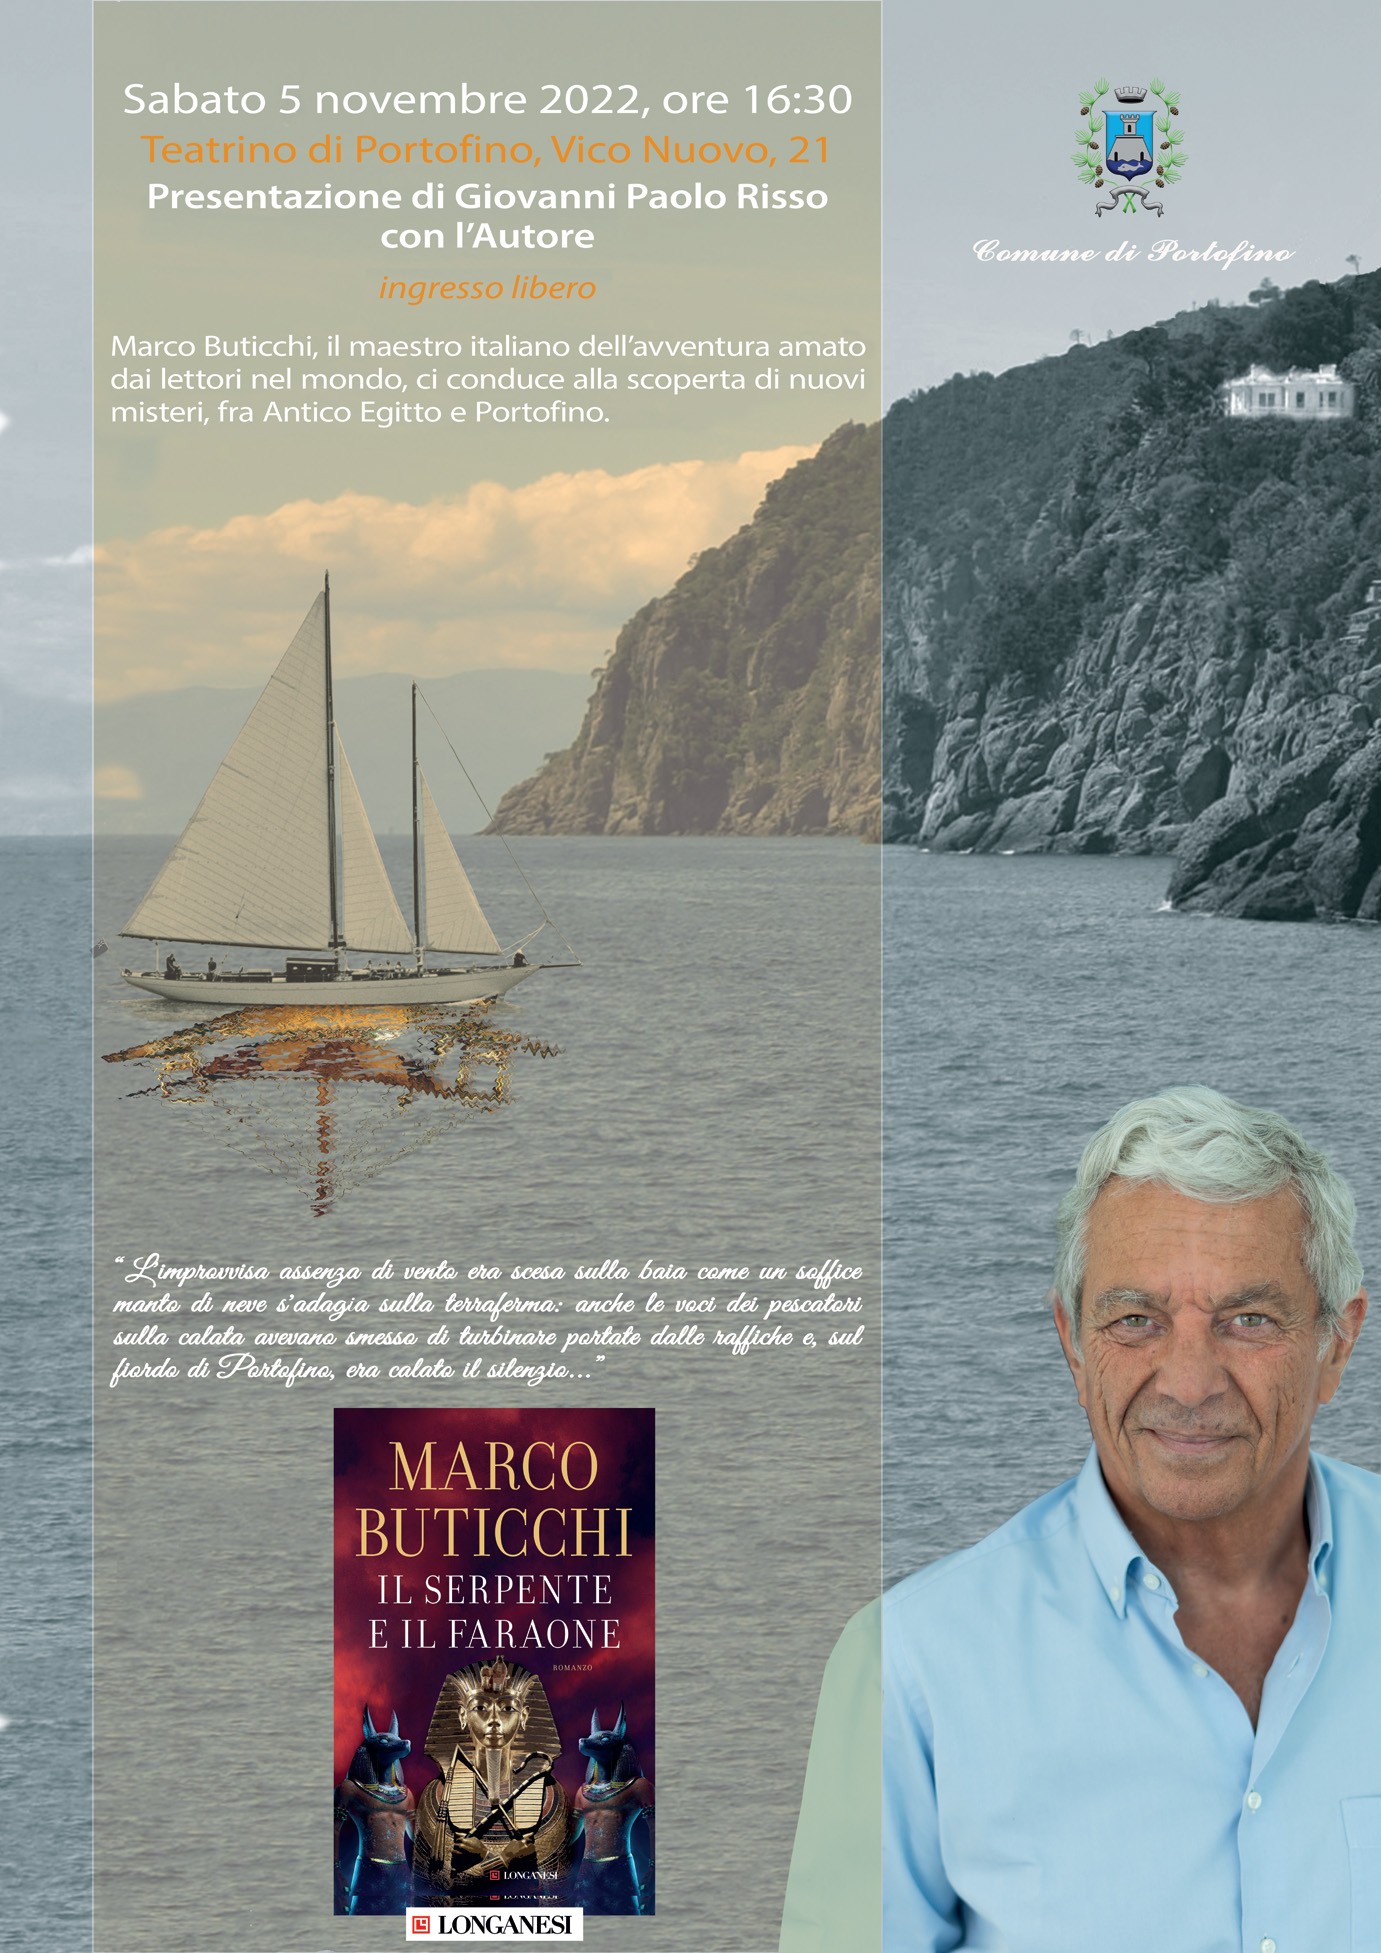 Comune di Portofino - 5 Novembre - Presentazione del romanzo “Il serpente e il faraone” di Marco Buticchi al Teatrino